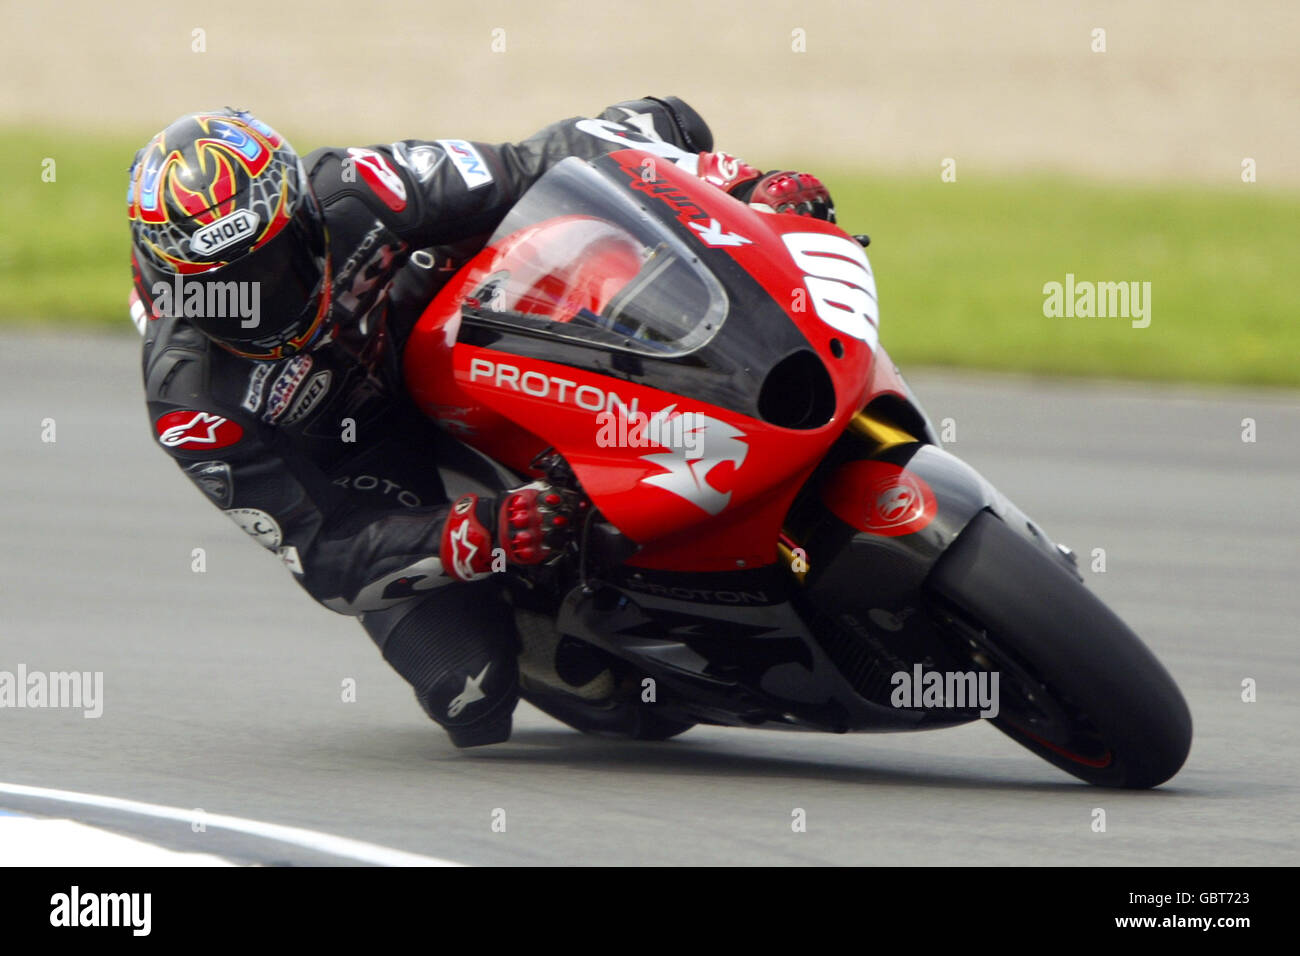 Motorradfahren - großer Preis von Großbritannien - Moto GP - Qualifikation. Kurtis Roberts in Aktion Stockfoto